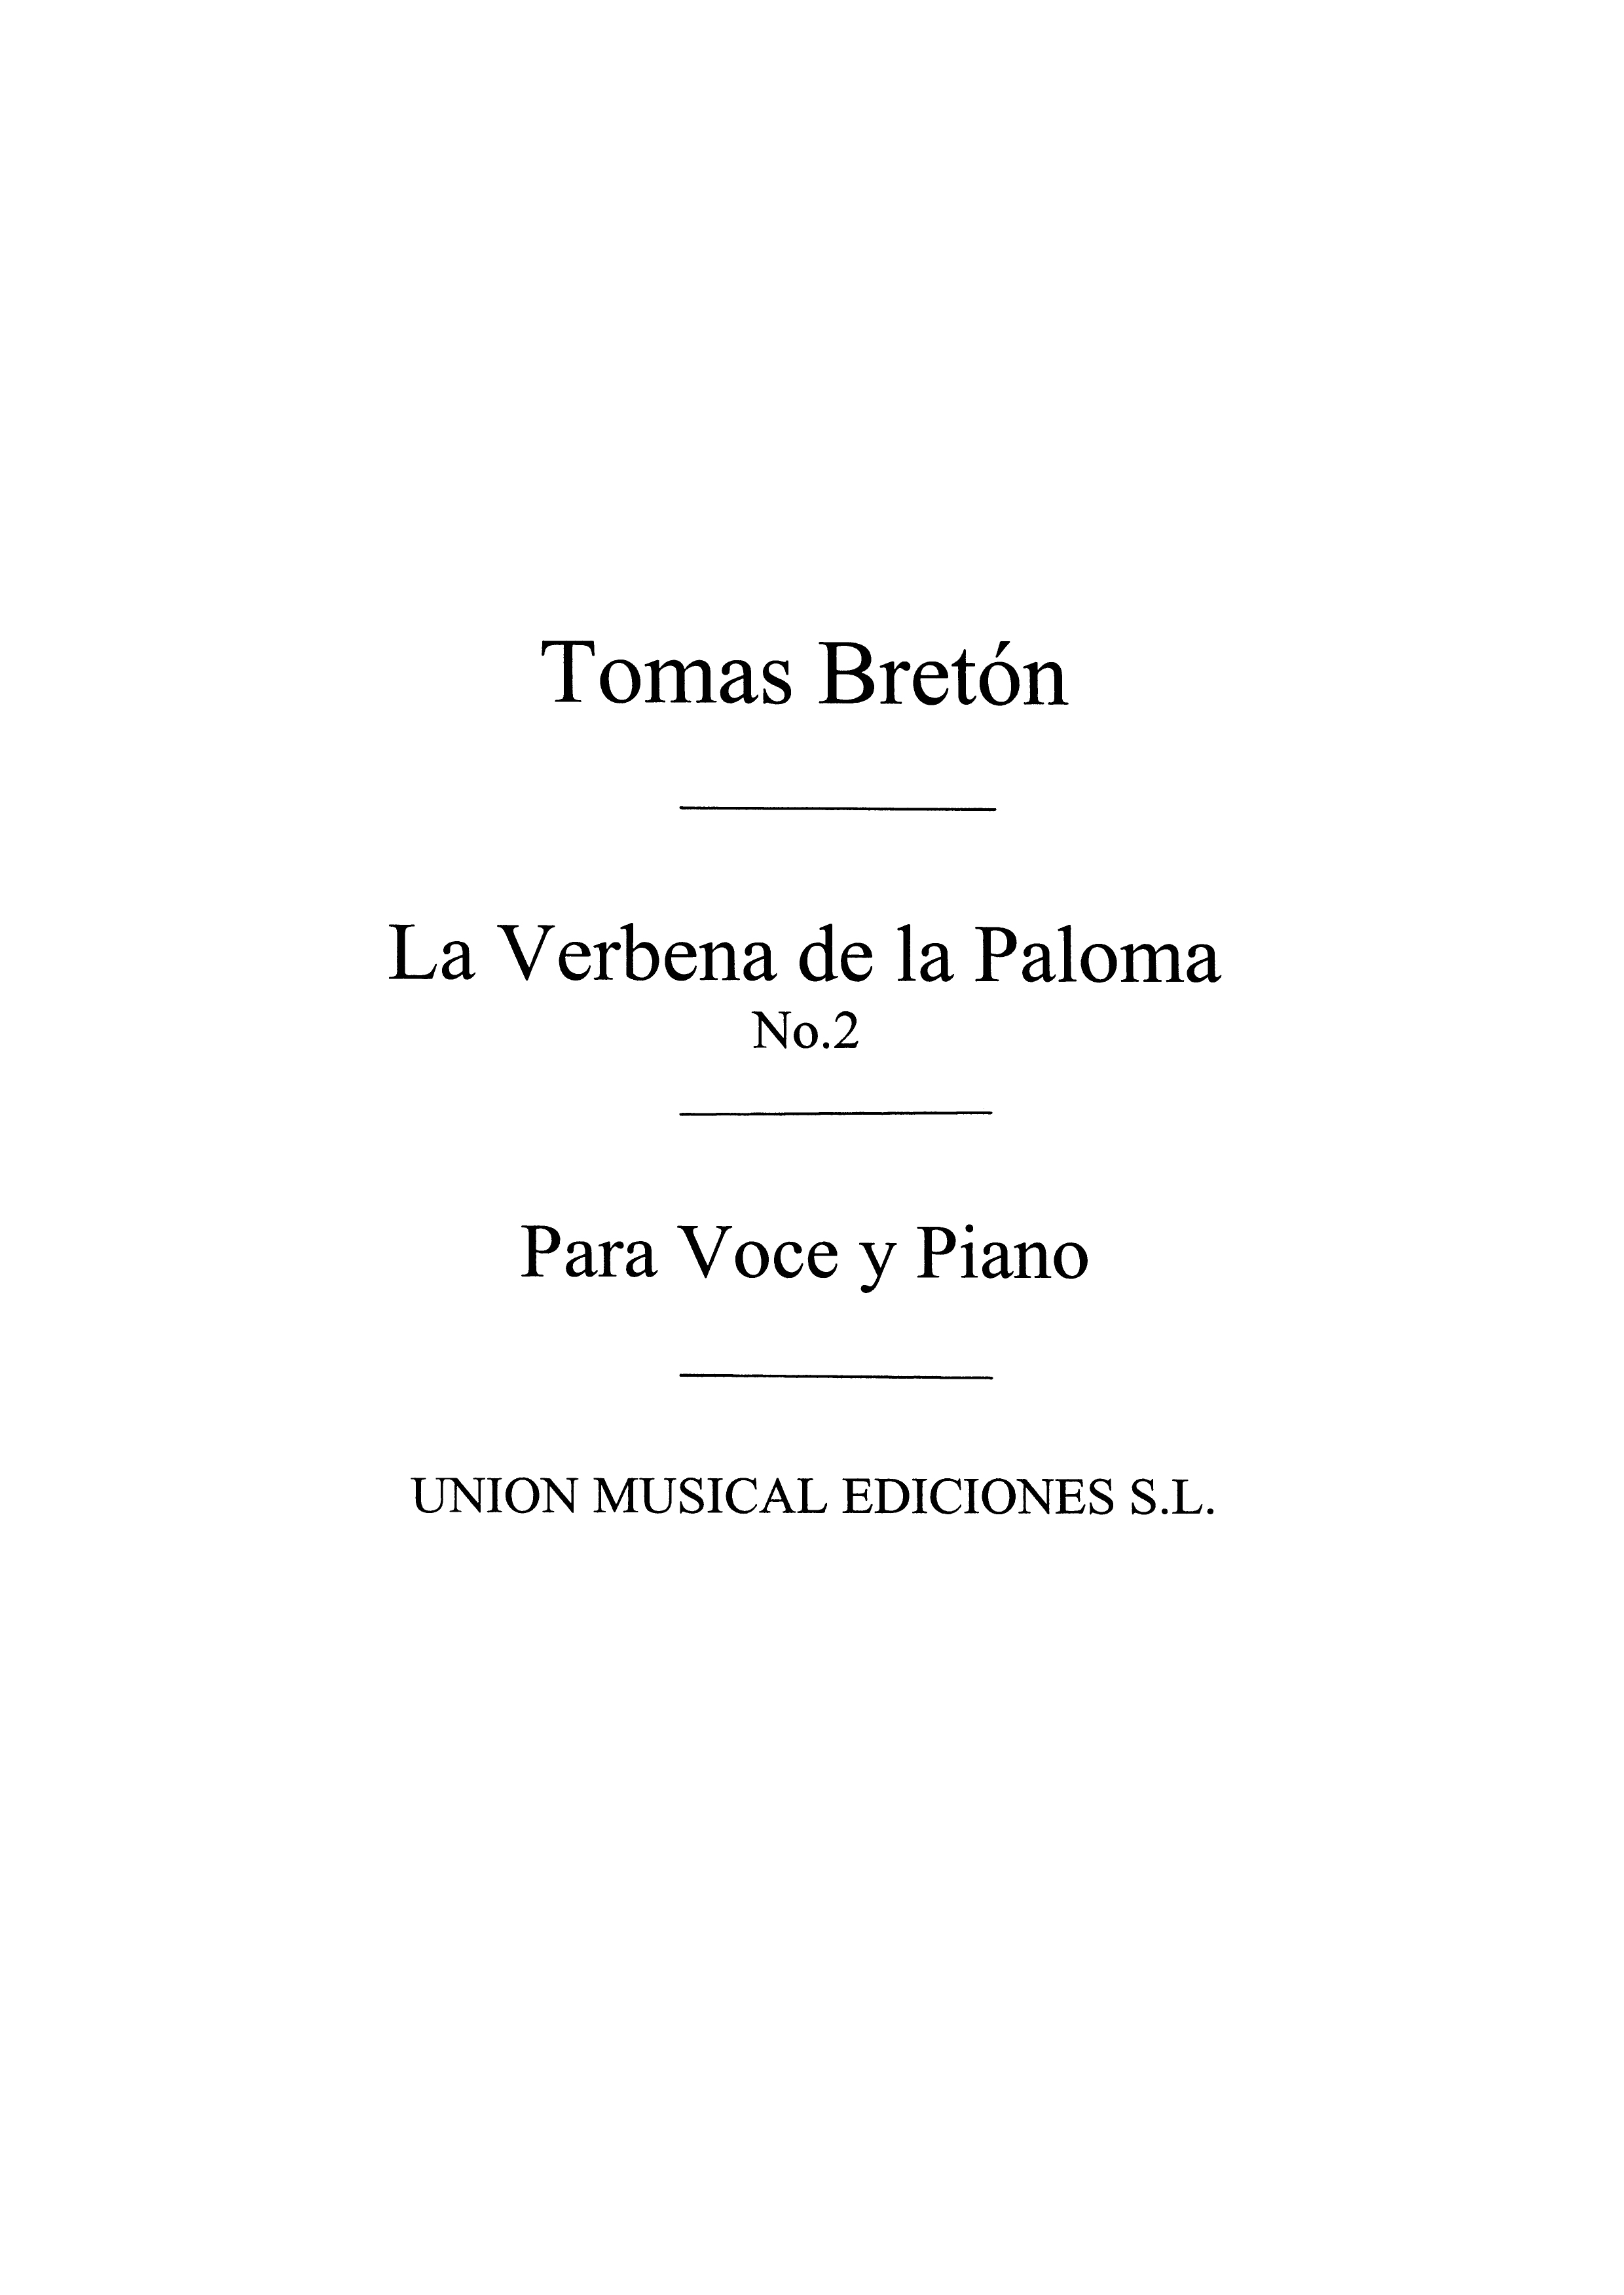 Tomas Breton: Tomas Breton: La Verbena De La Paloma No.2: Voice: Mixed Songbook